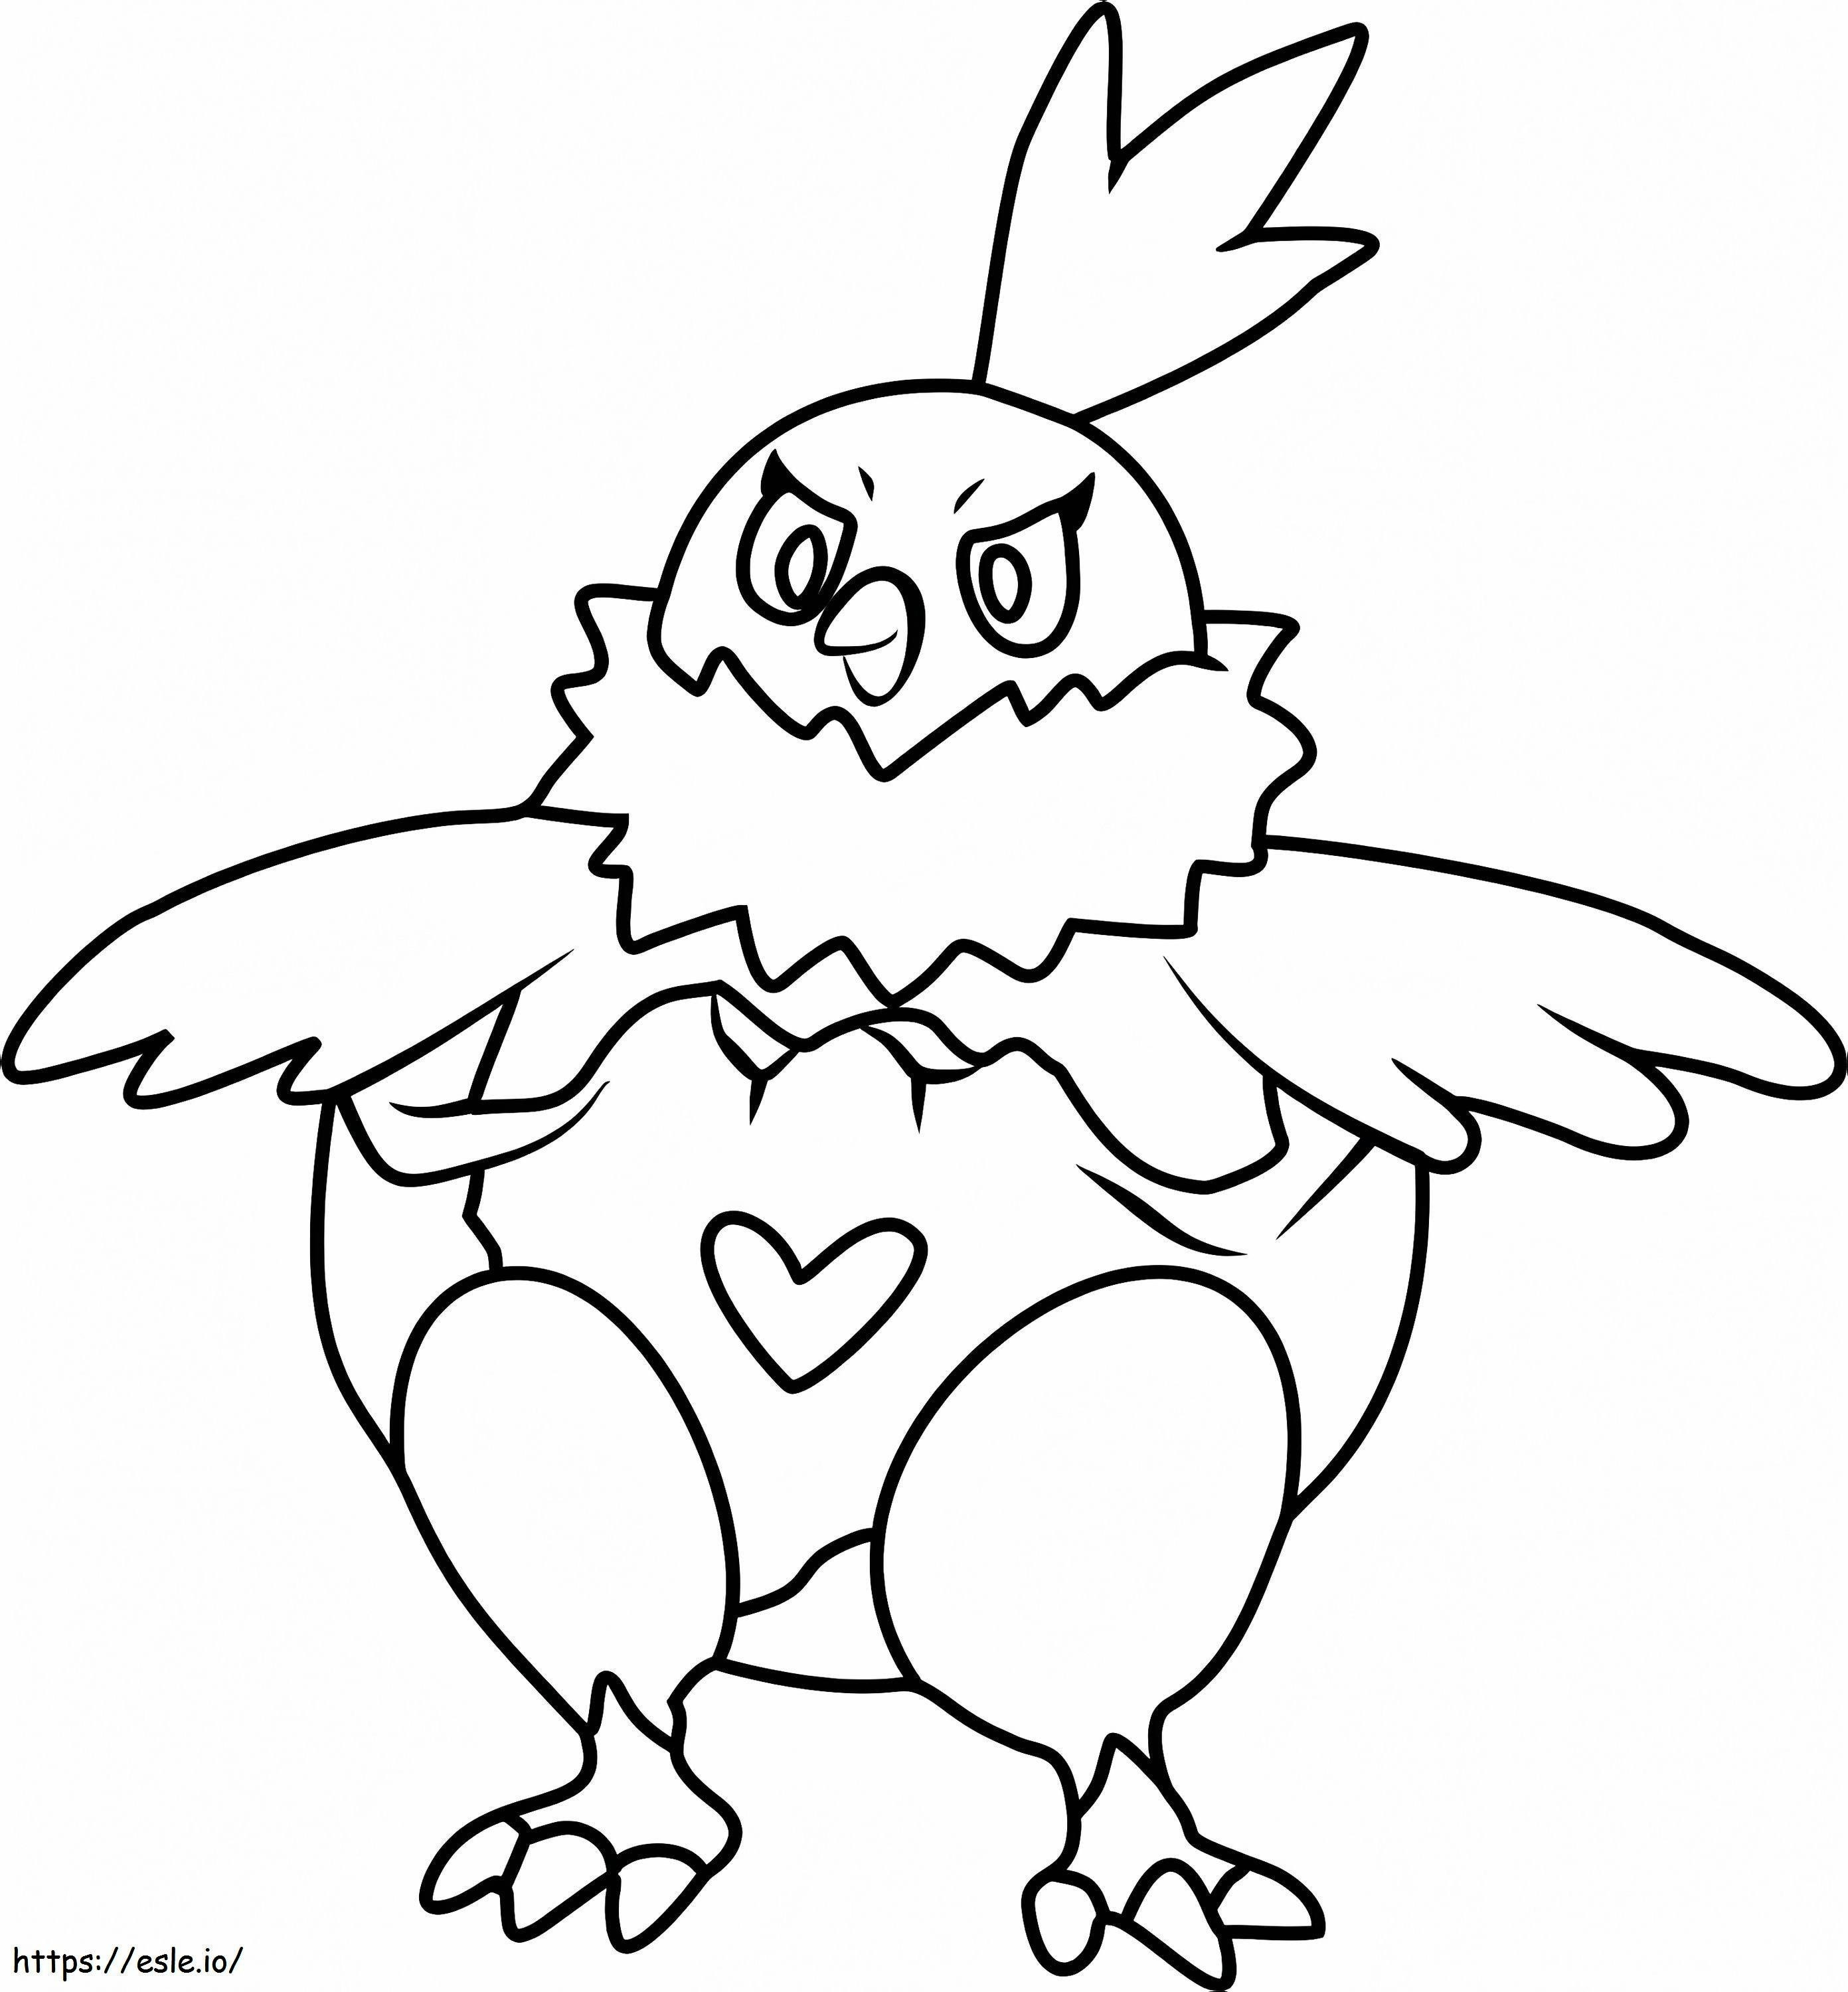 Coloriage Pokémon Vullaby Gen 5 à imprimer dessin